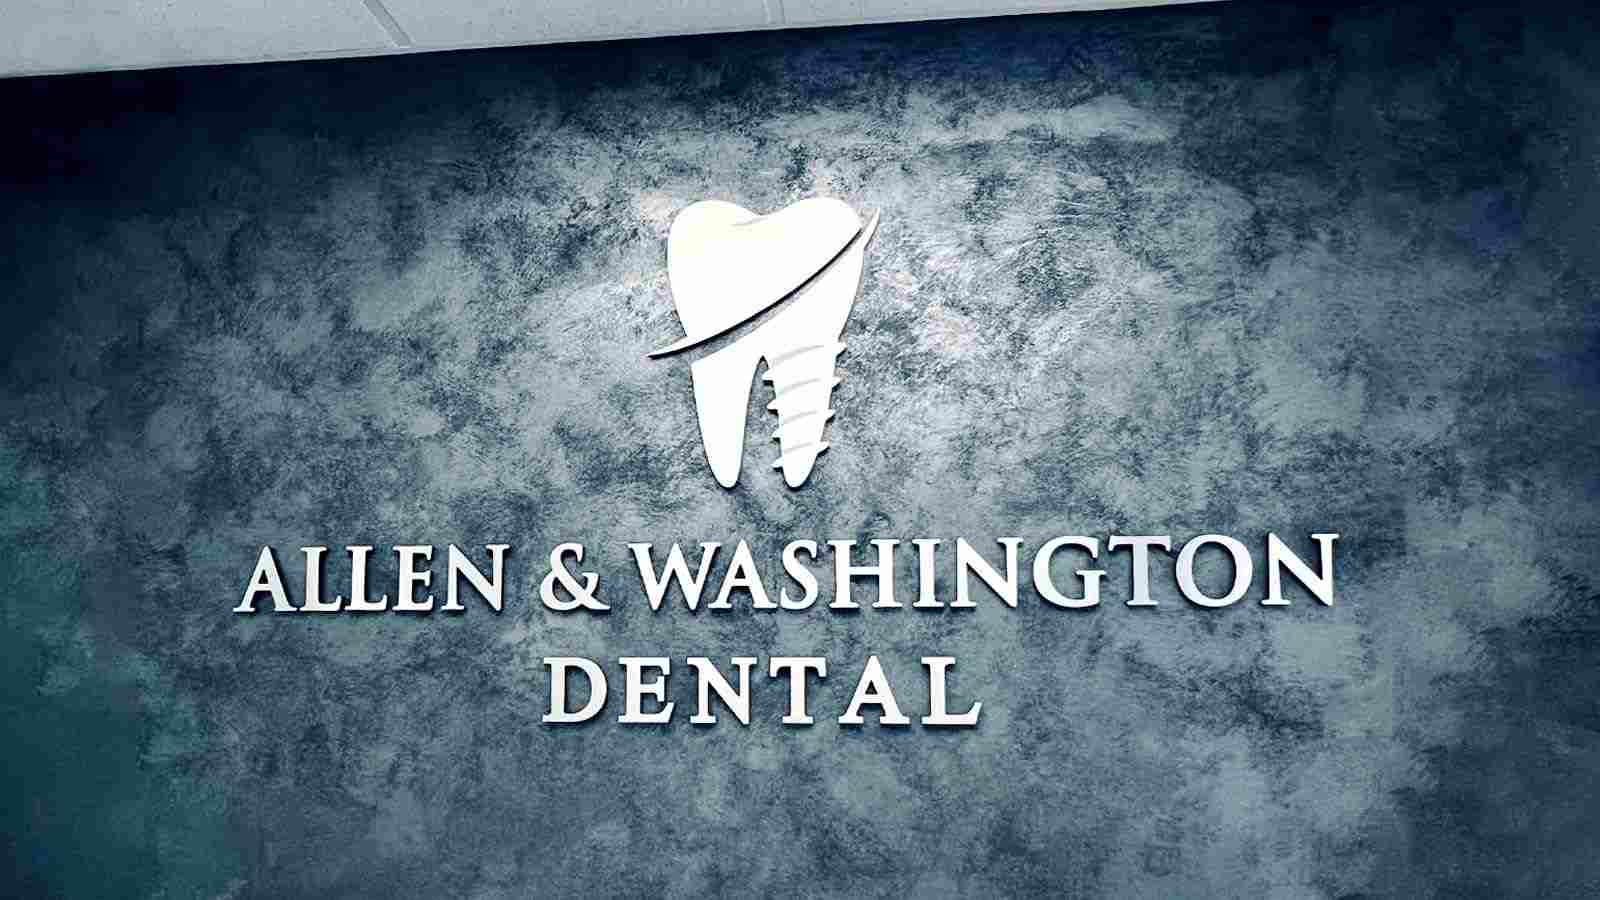 allen washington dental brushed aluminum sign